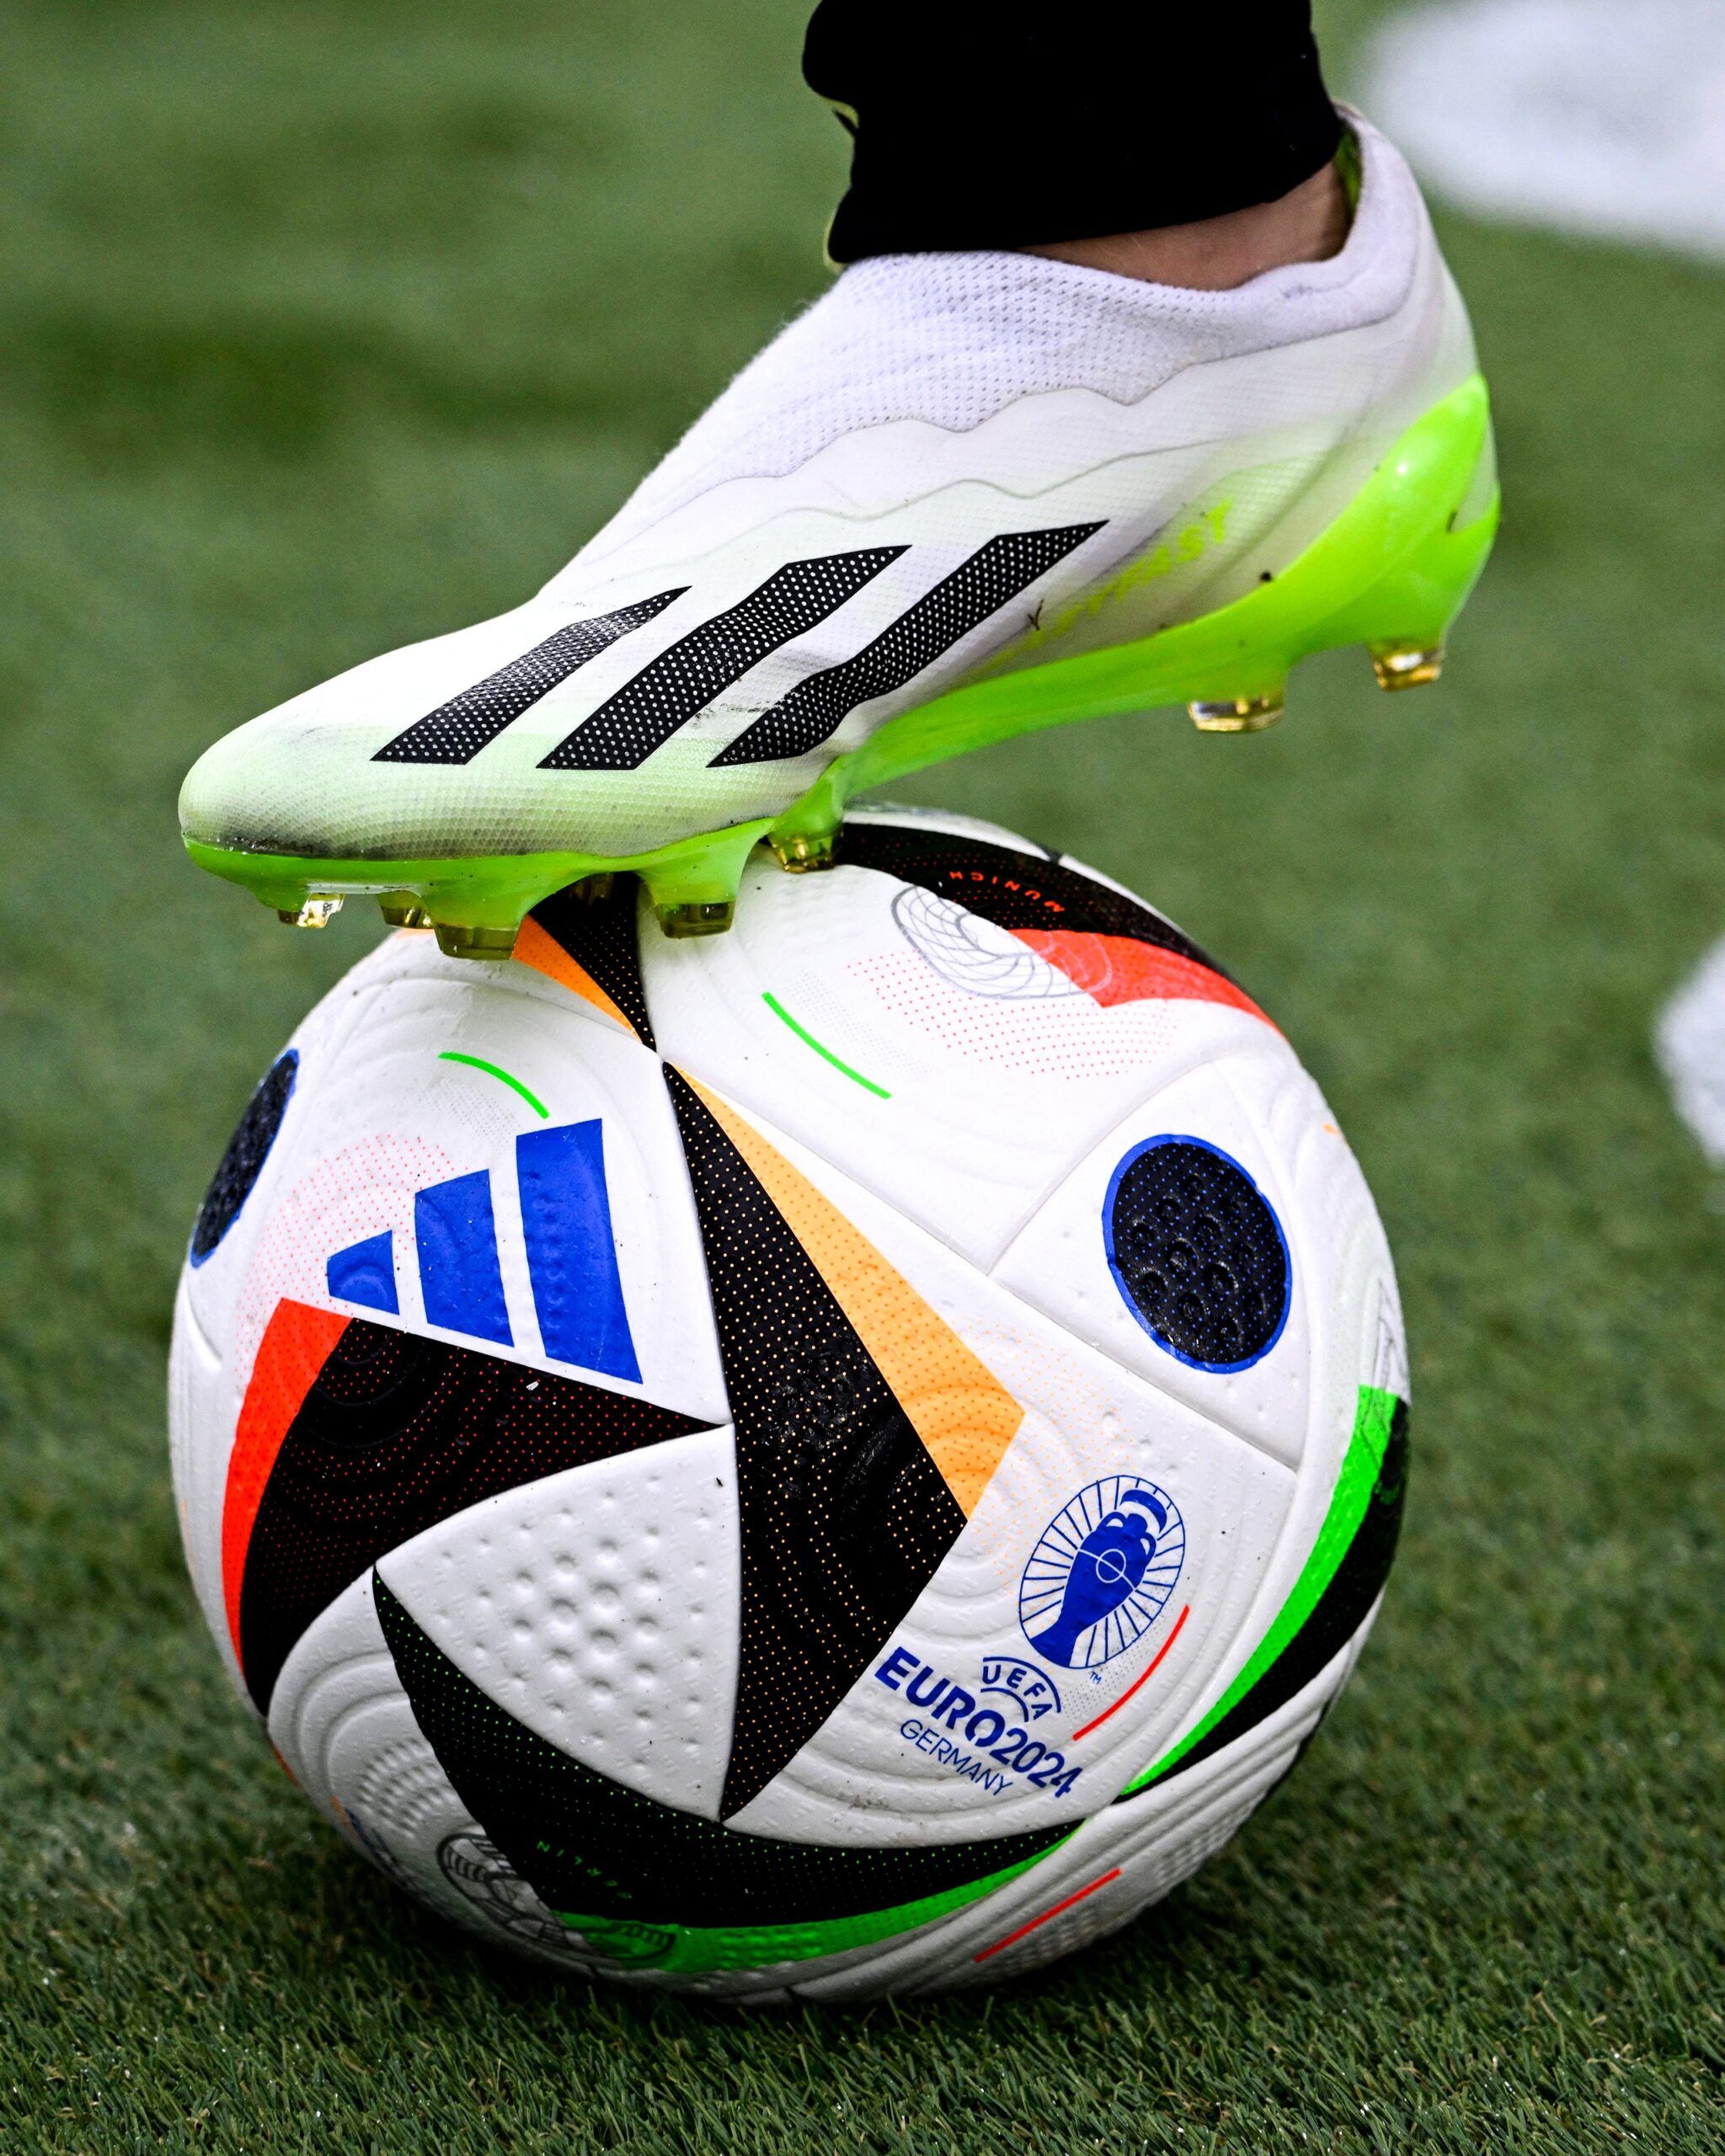 L'UEFA dévoile le ballon officiel connecté de l'Euro 2024 - LINFO